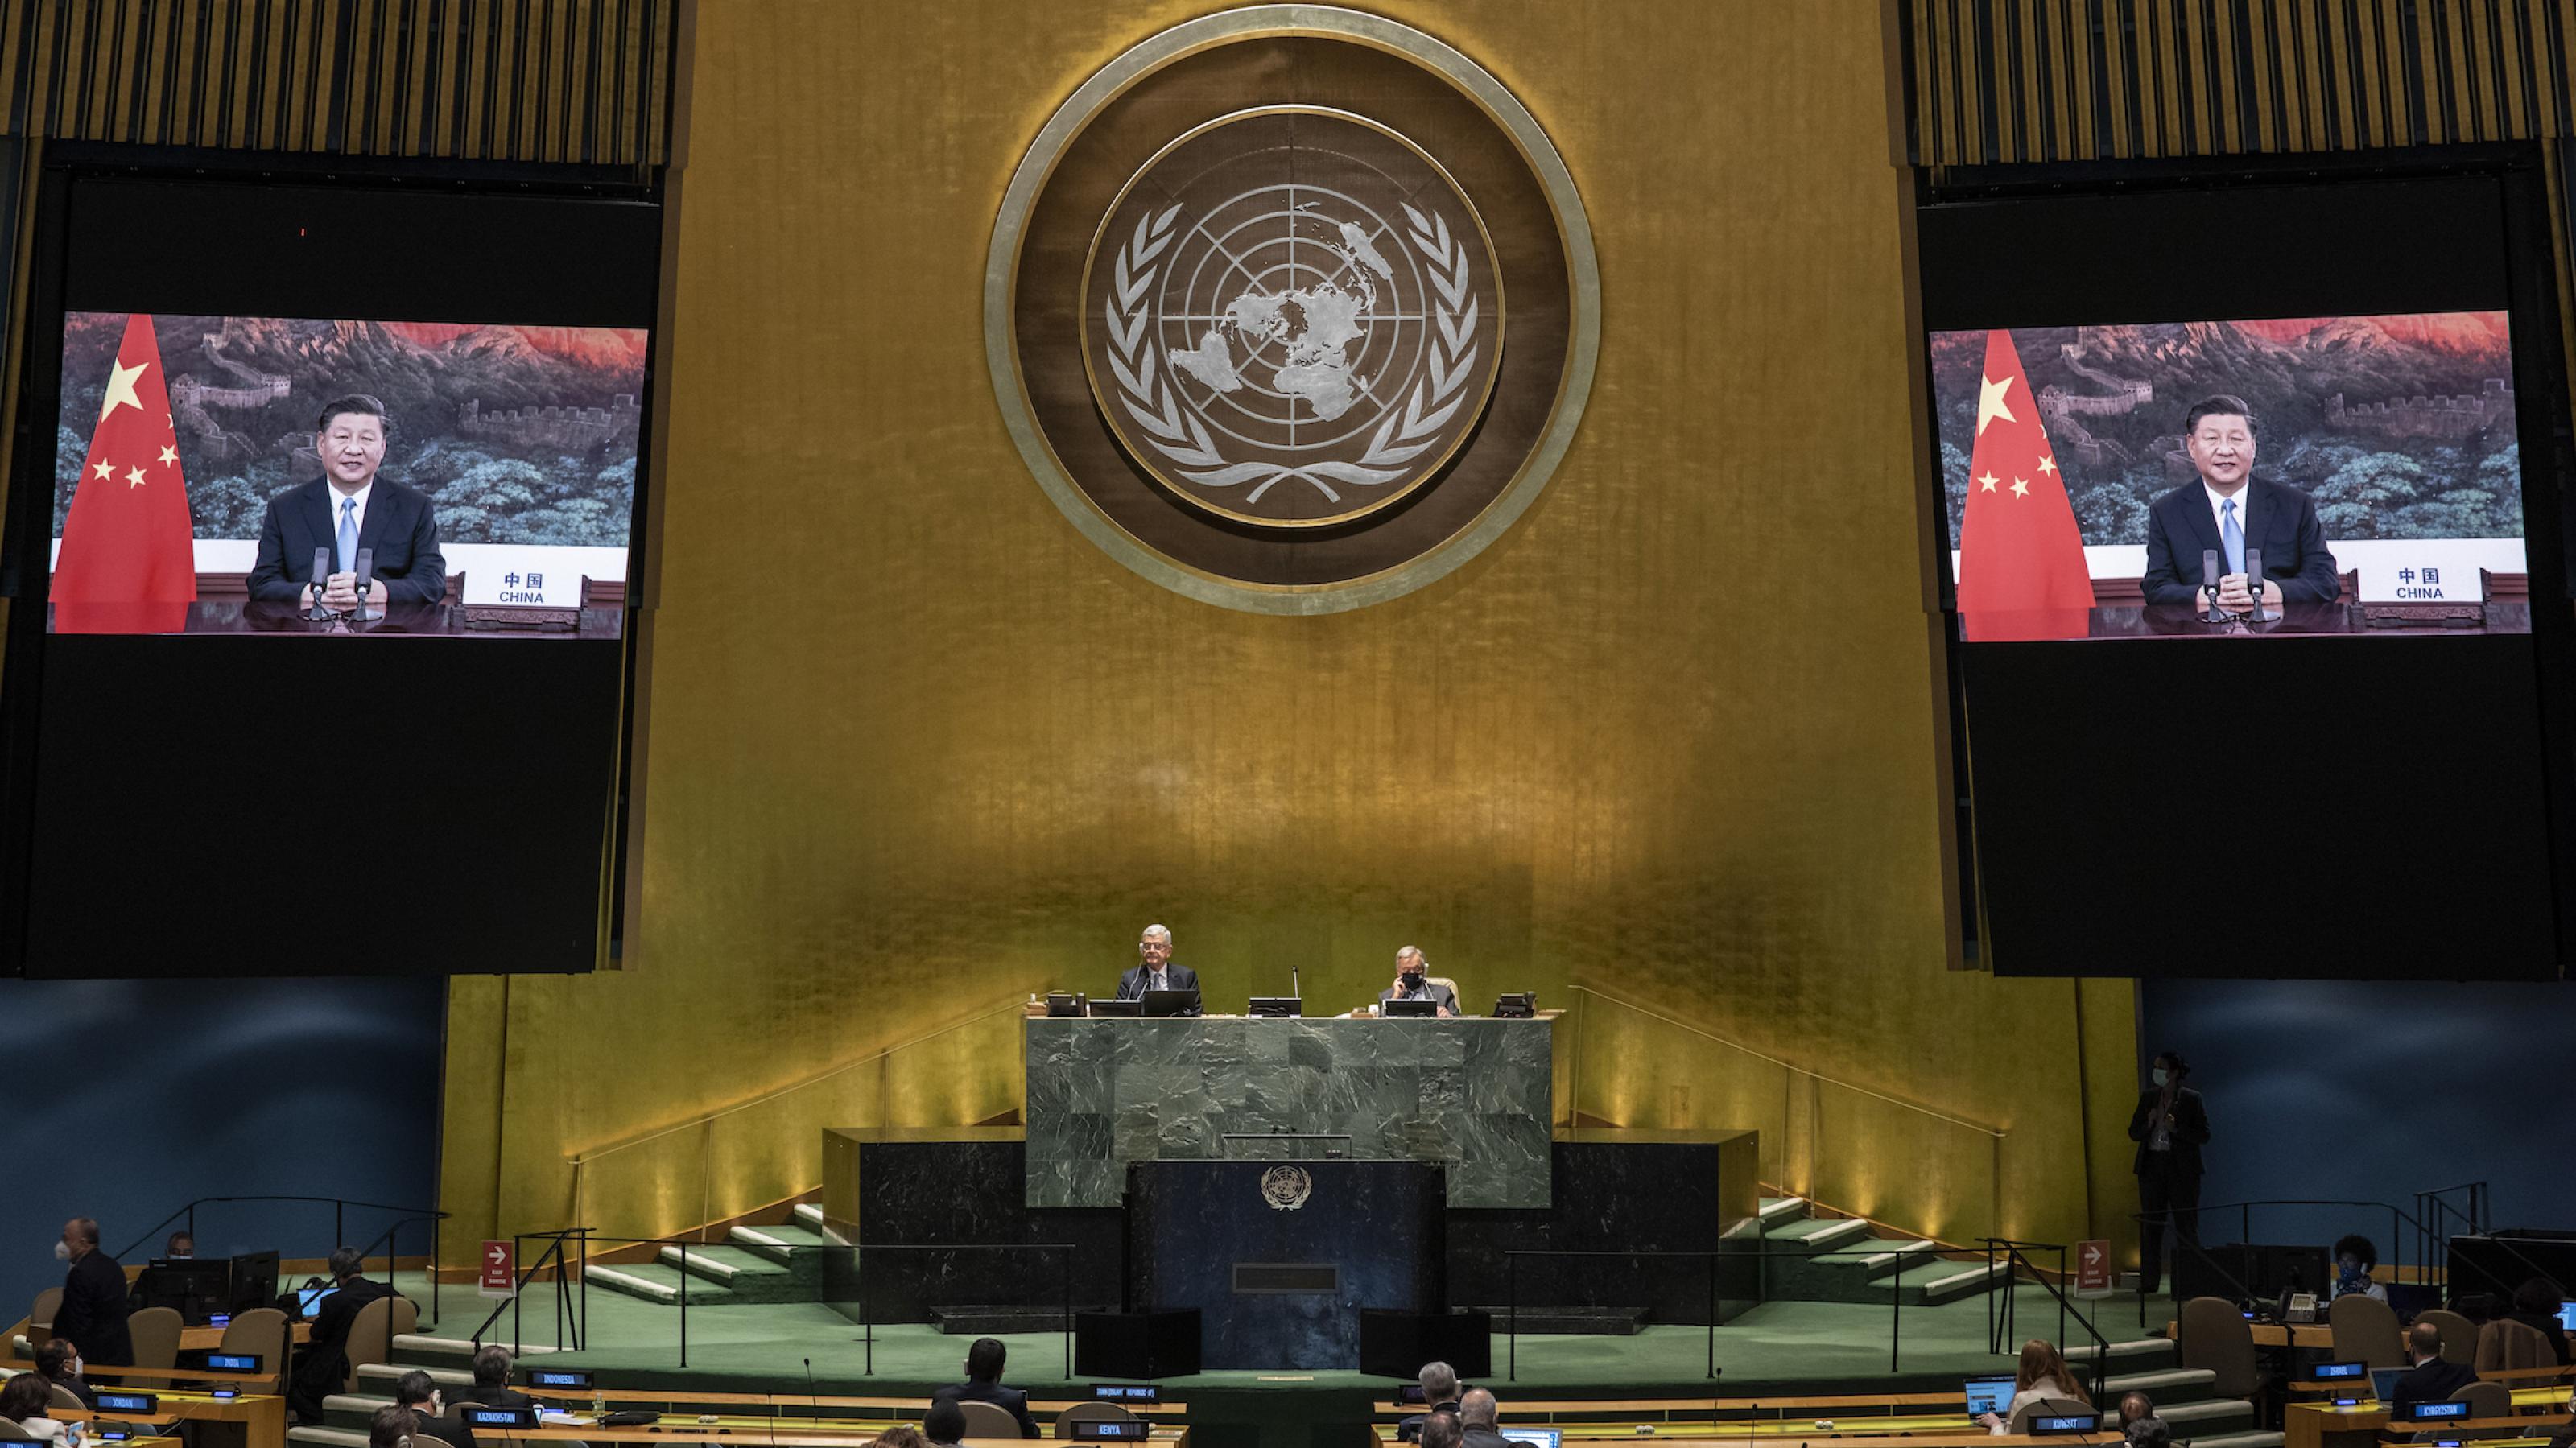 Das Bild zeigt den Plenarsaal der Vereinten Nationen mit seiner goldfarbenen Frontseite und den mächtigen Säulen während der laufenden Generalversammlung. Der Saal ist aber nur spärlich besetzt, weil wegen der Corona-Pandemie die Staats- und Regierungschefs von zuhause aus sprechen.